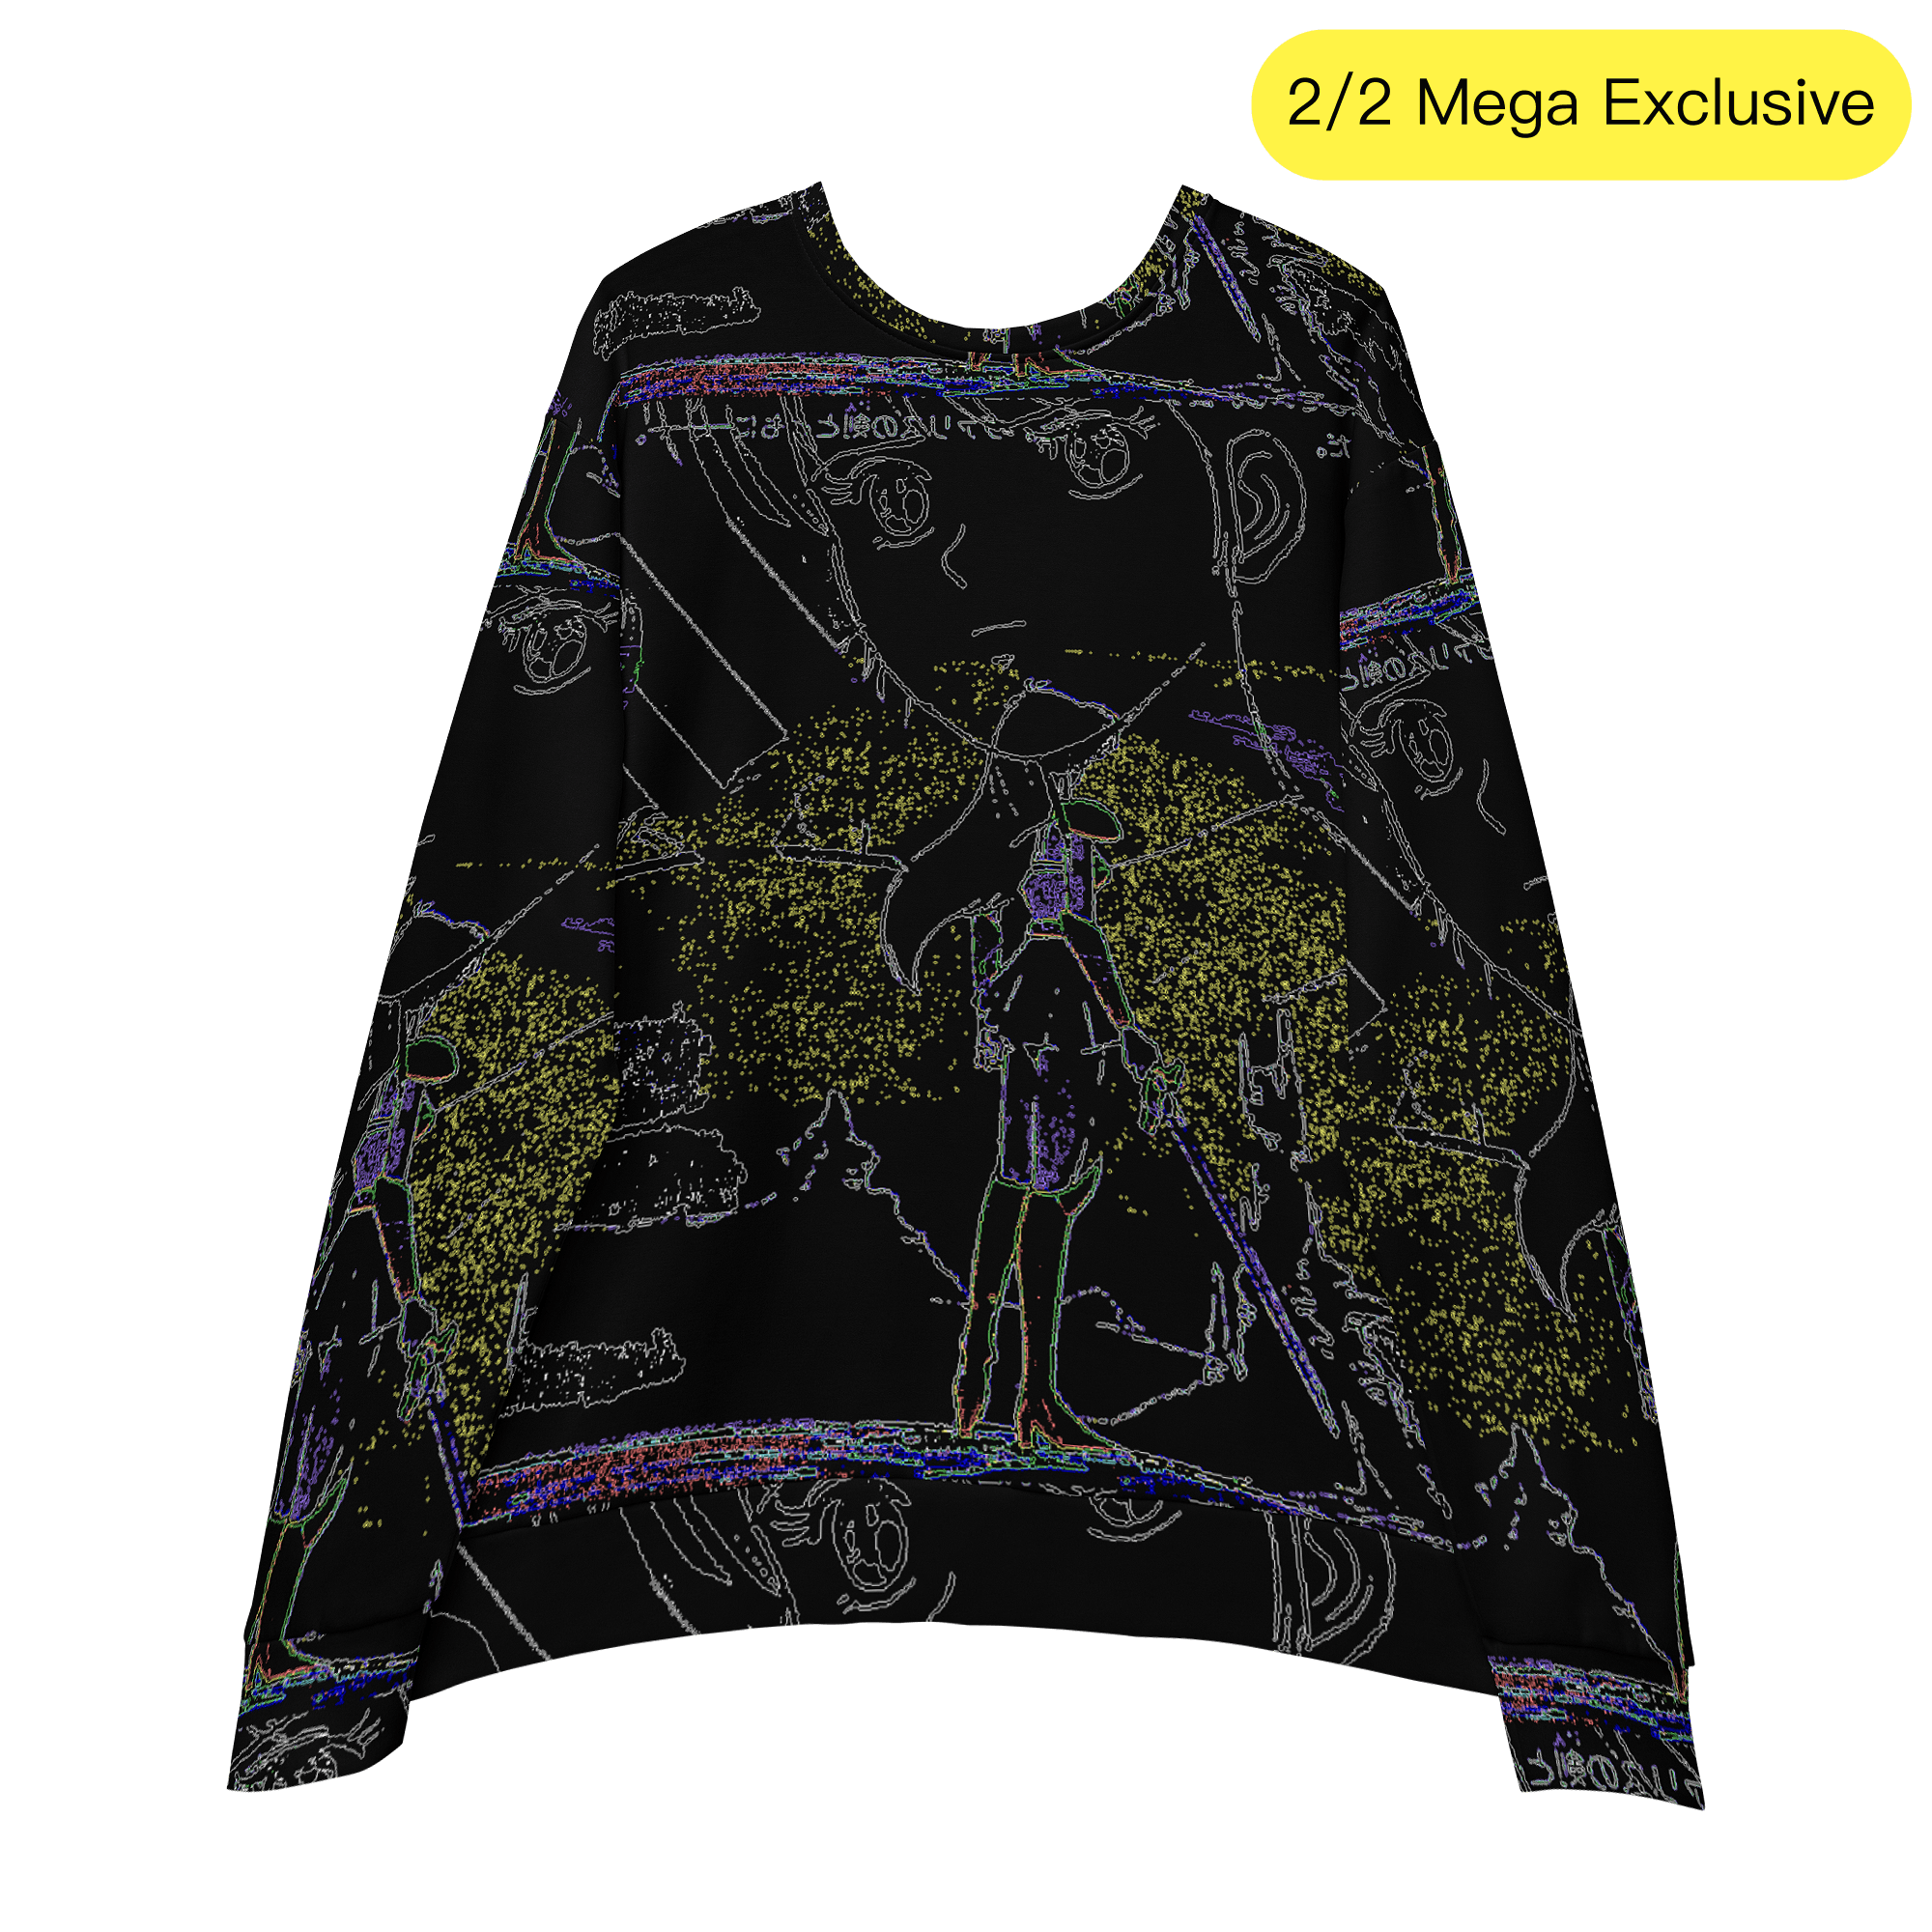 Epik 9009® Deluxe Light Sweatshirt (2 pieces only 2/2) ⭐️ - Kikillo Club